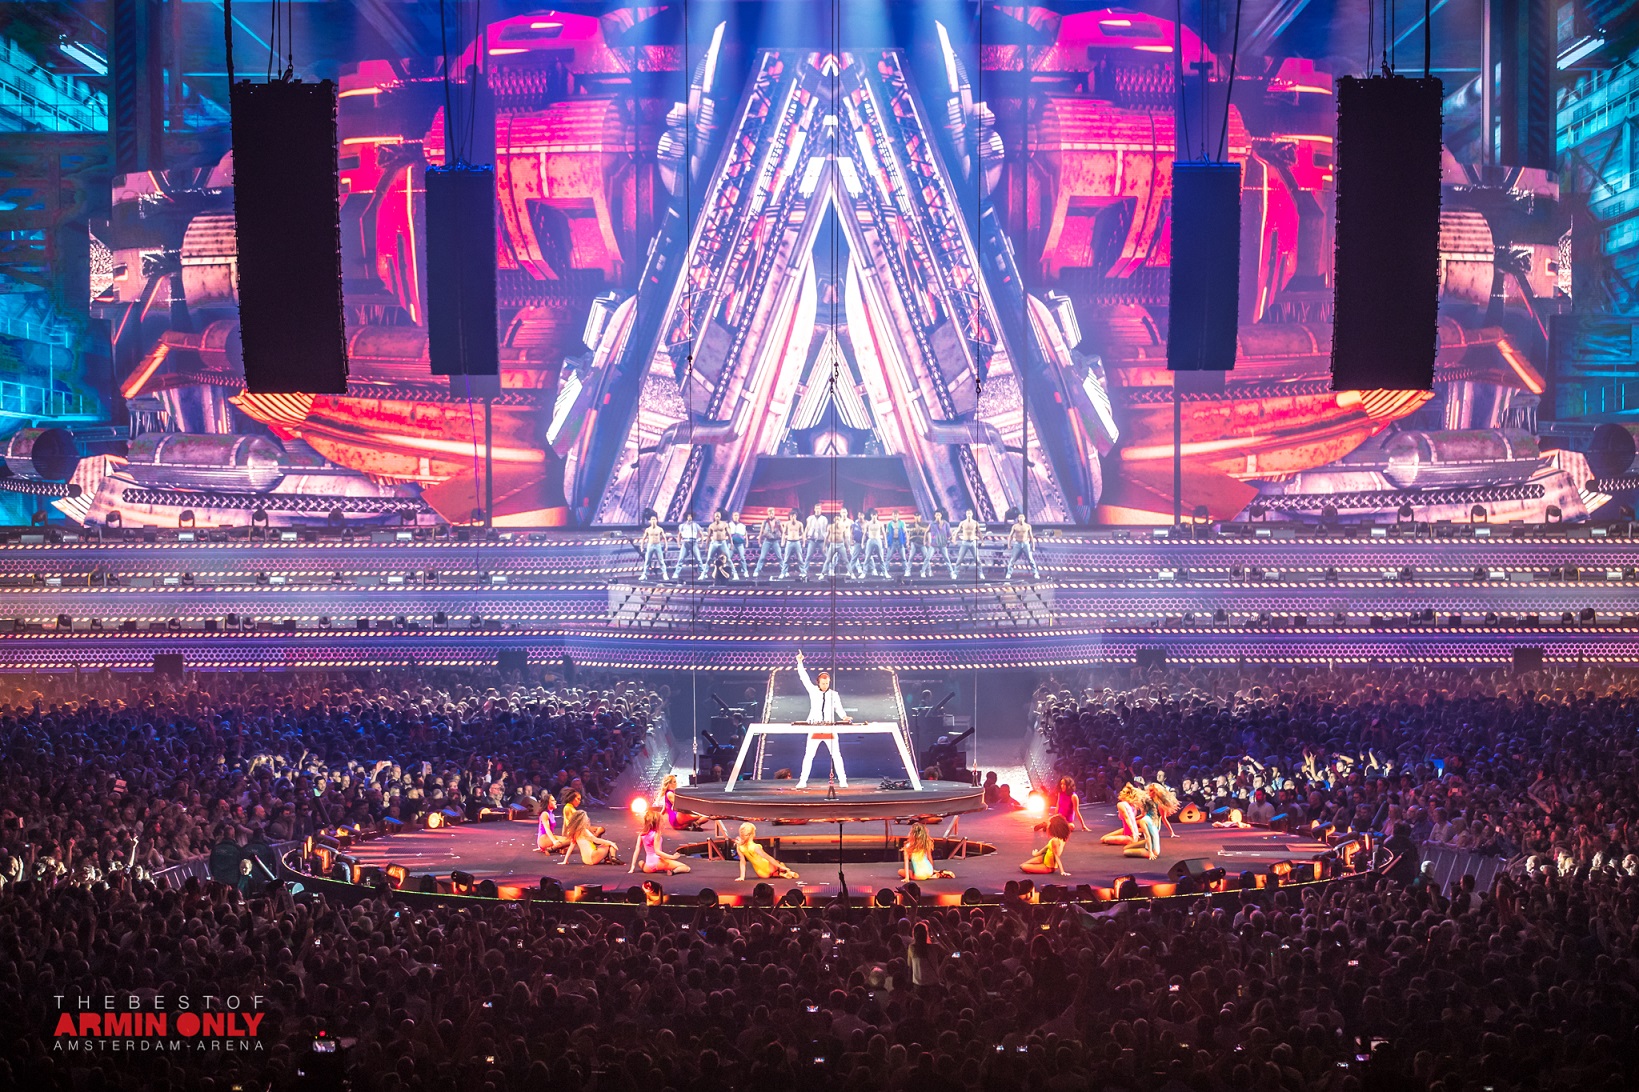 Armin van Buuren crazes 80,000 fans with biggest solo show ever